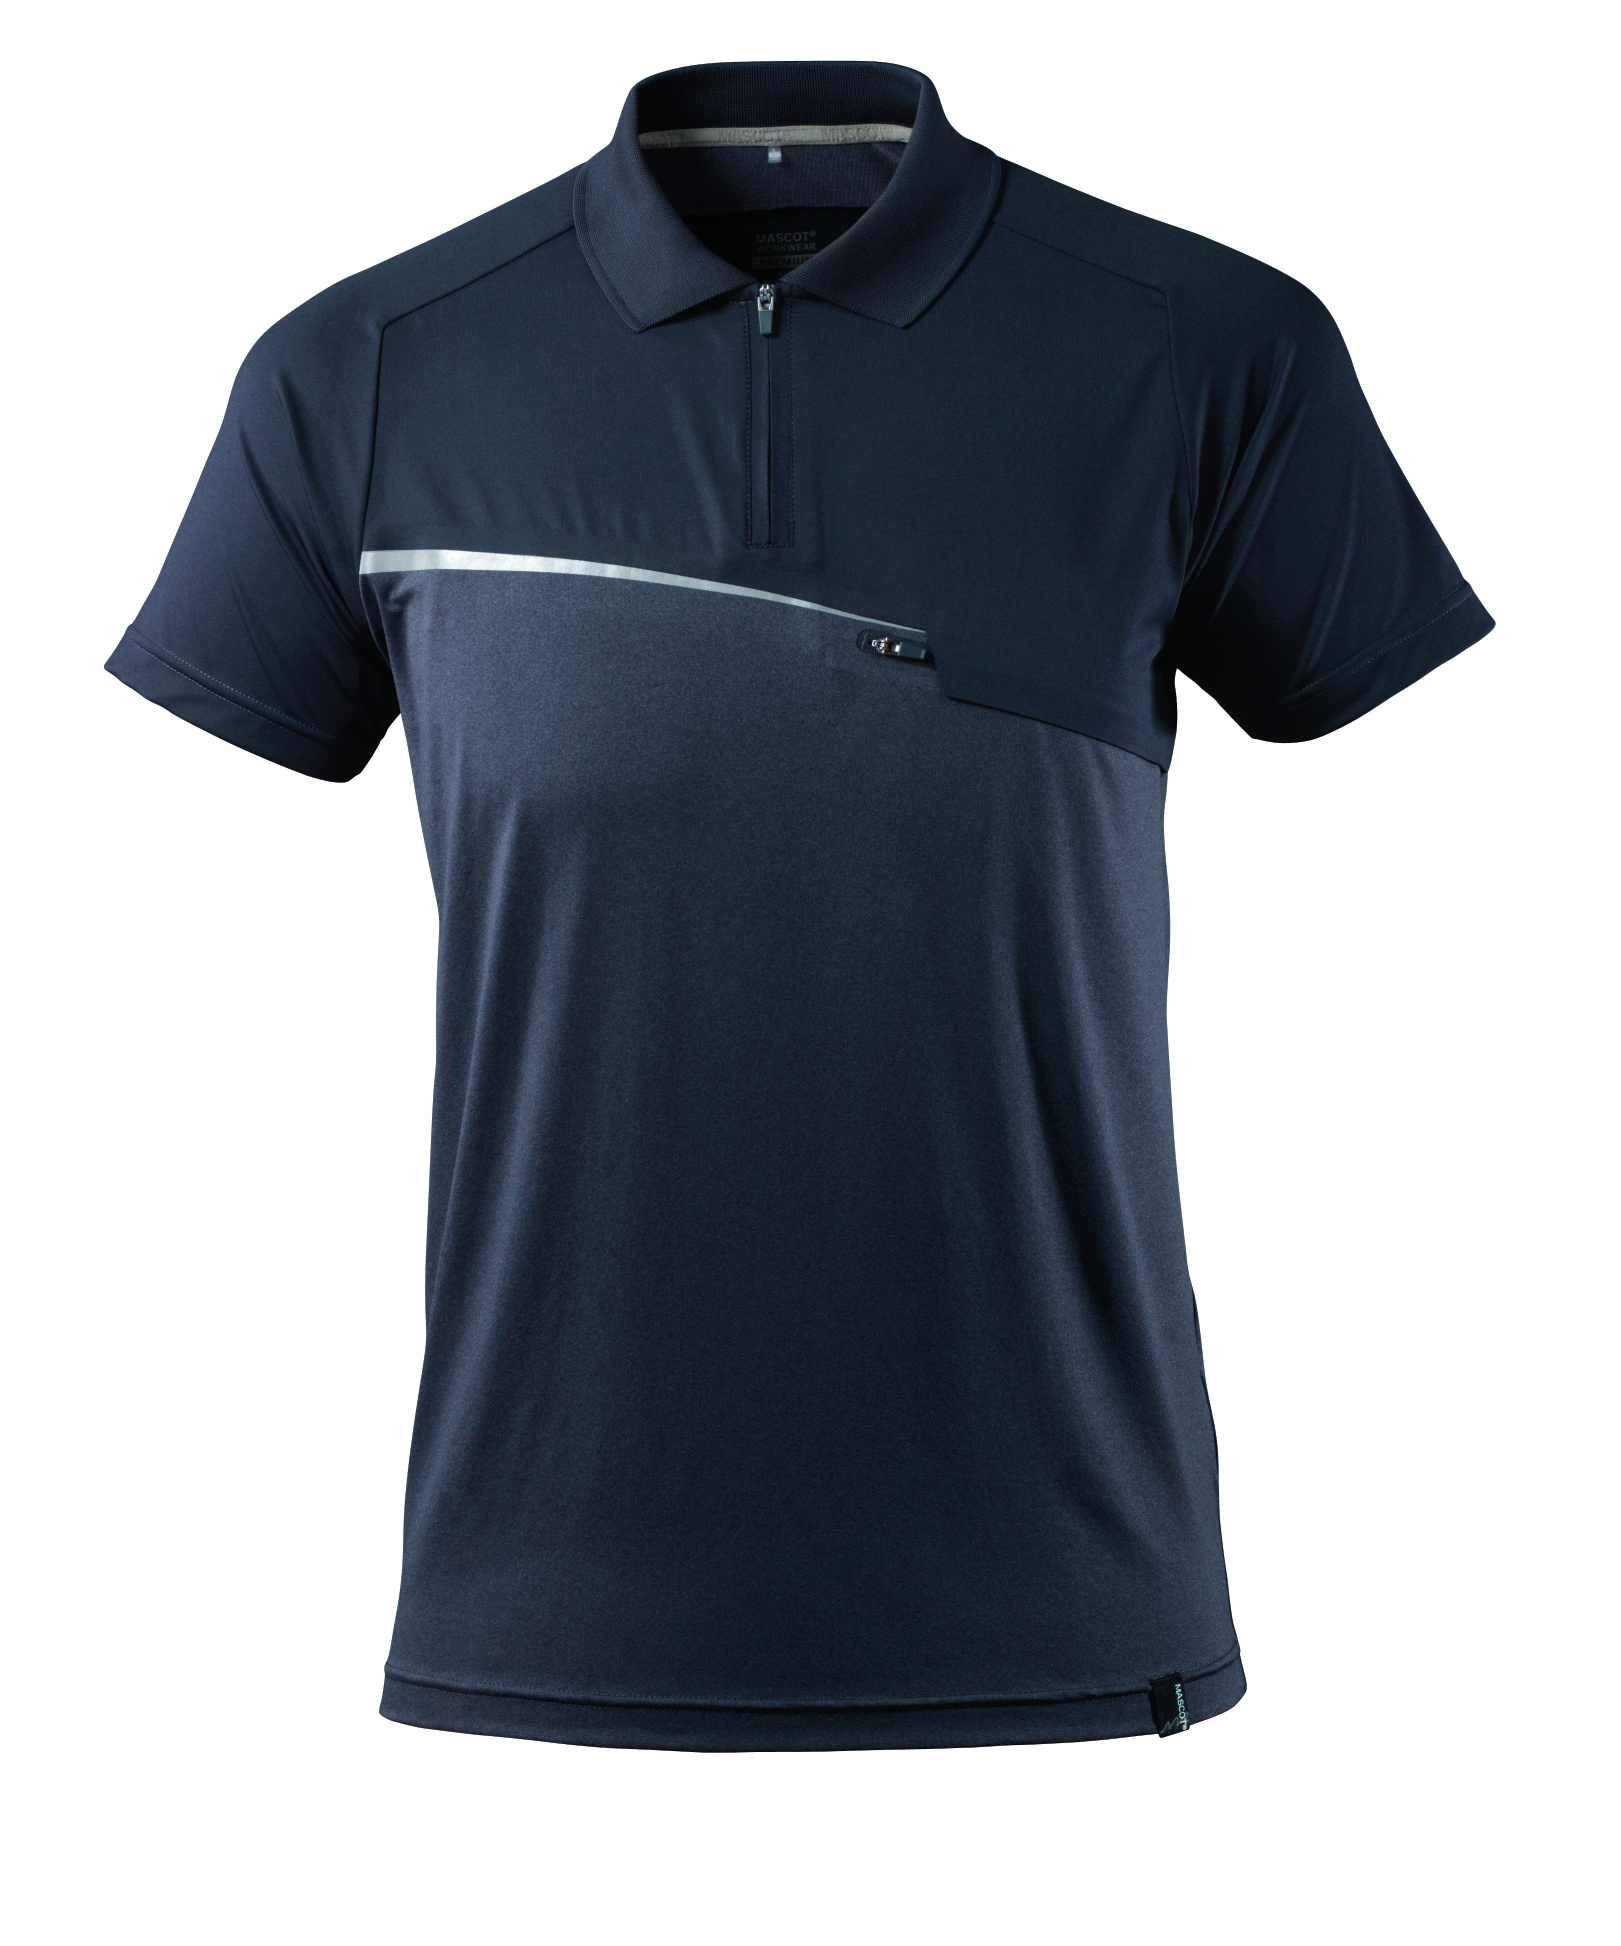 MASCOT Advanced Polo-Shirt Nr. 17283-945-010